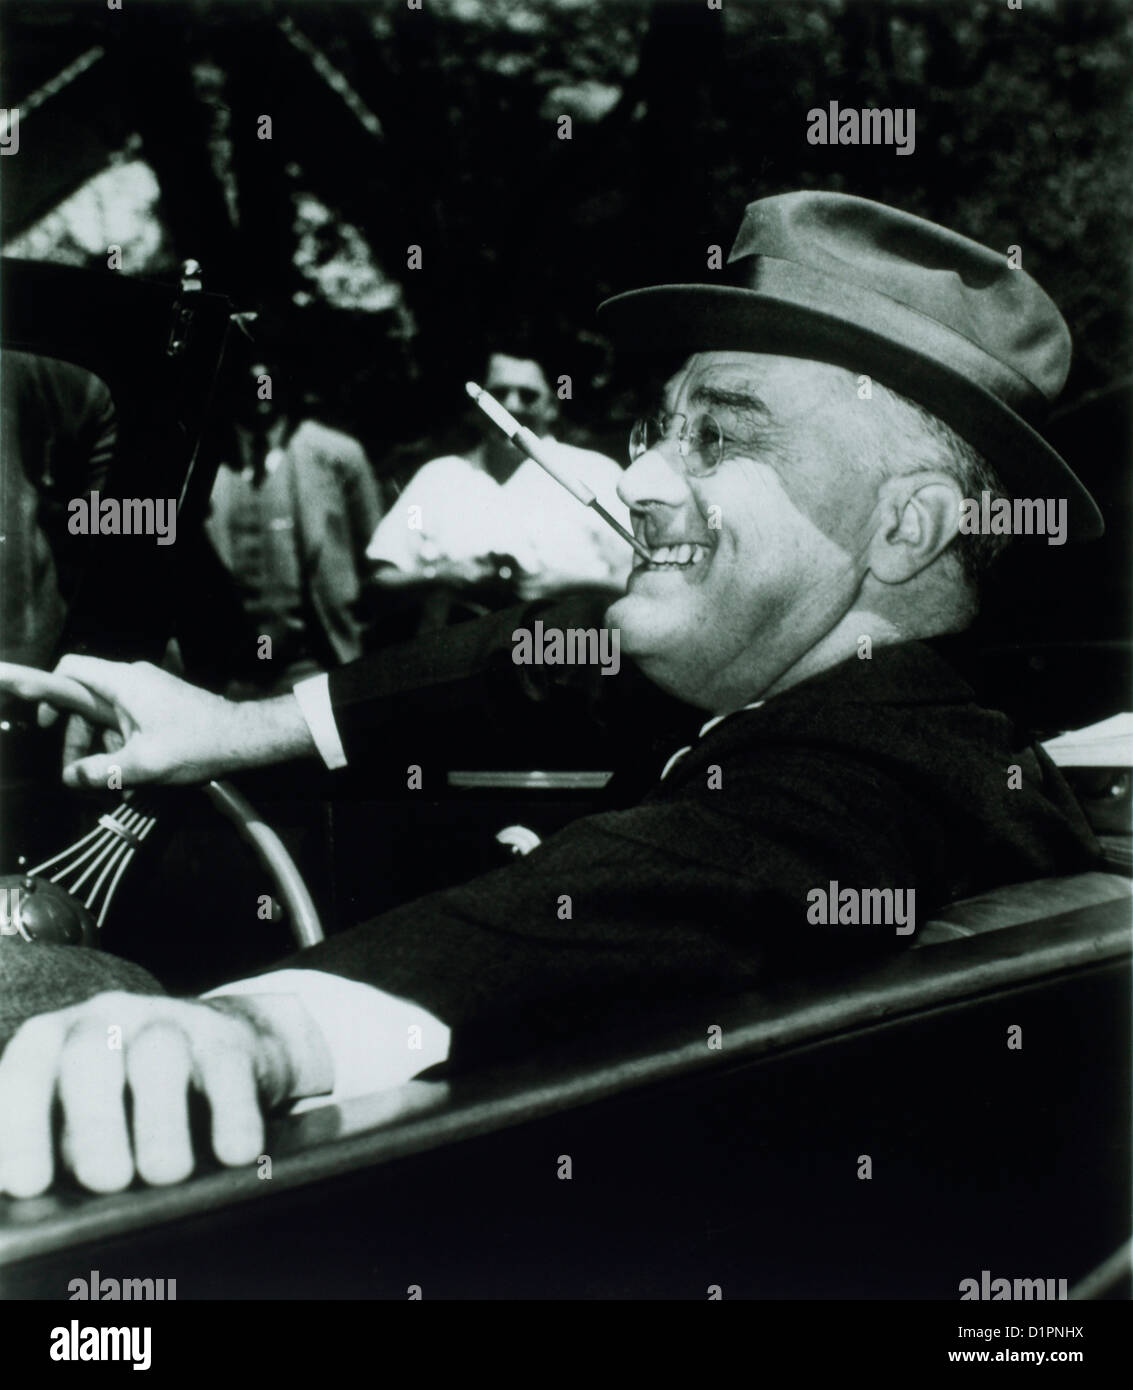 Franklin Roosevelt, 32e président des États-Unis d'Amérique, cigarette pendant la conduite automobile, 1939 Banque D'Images